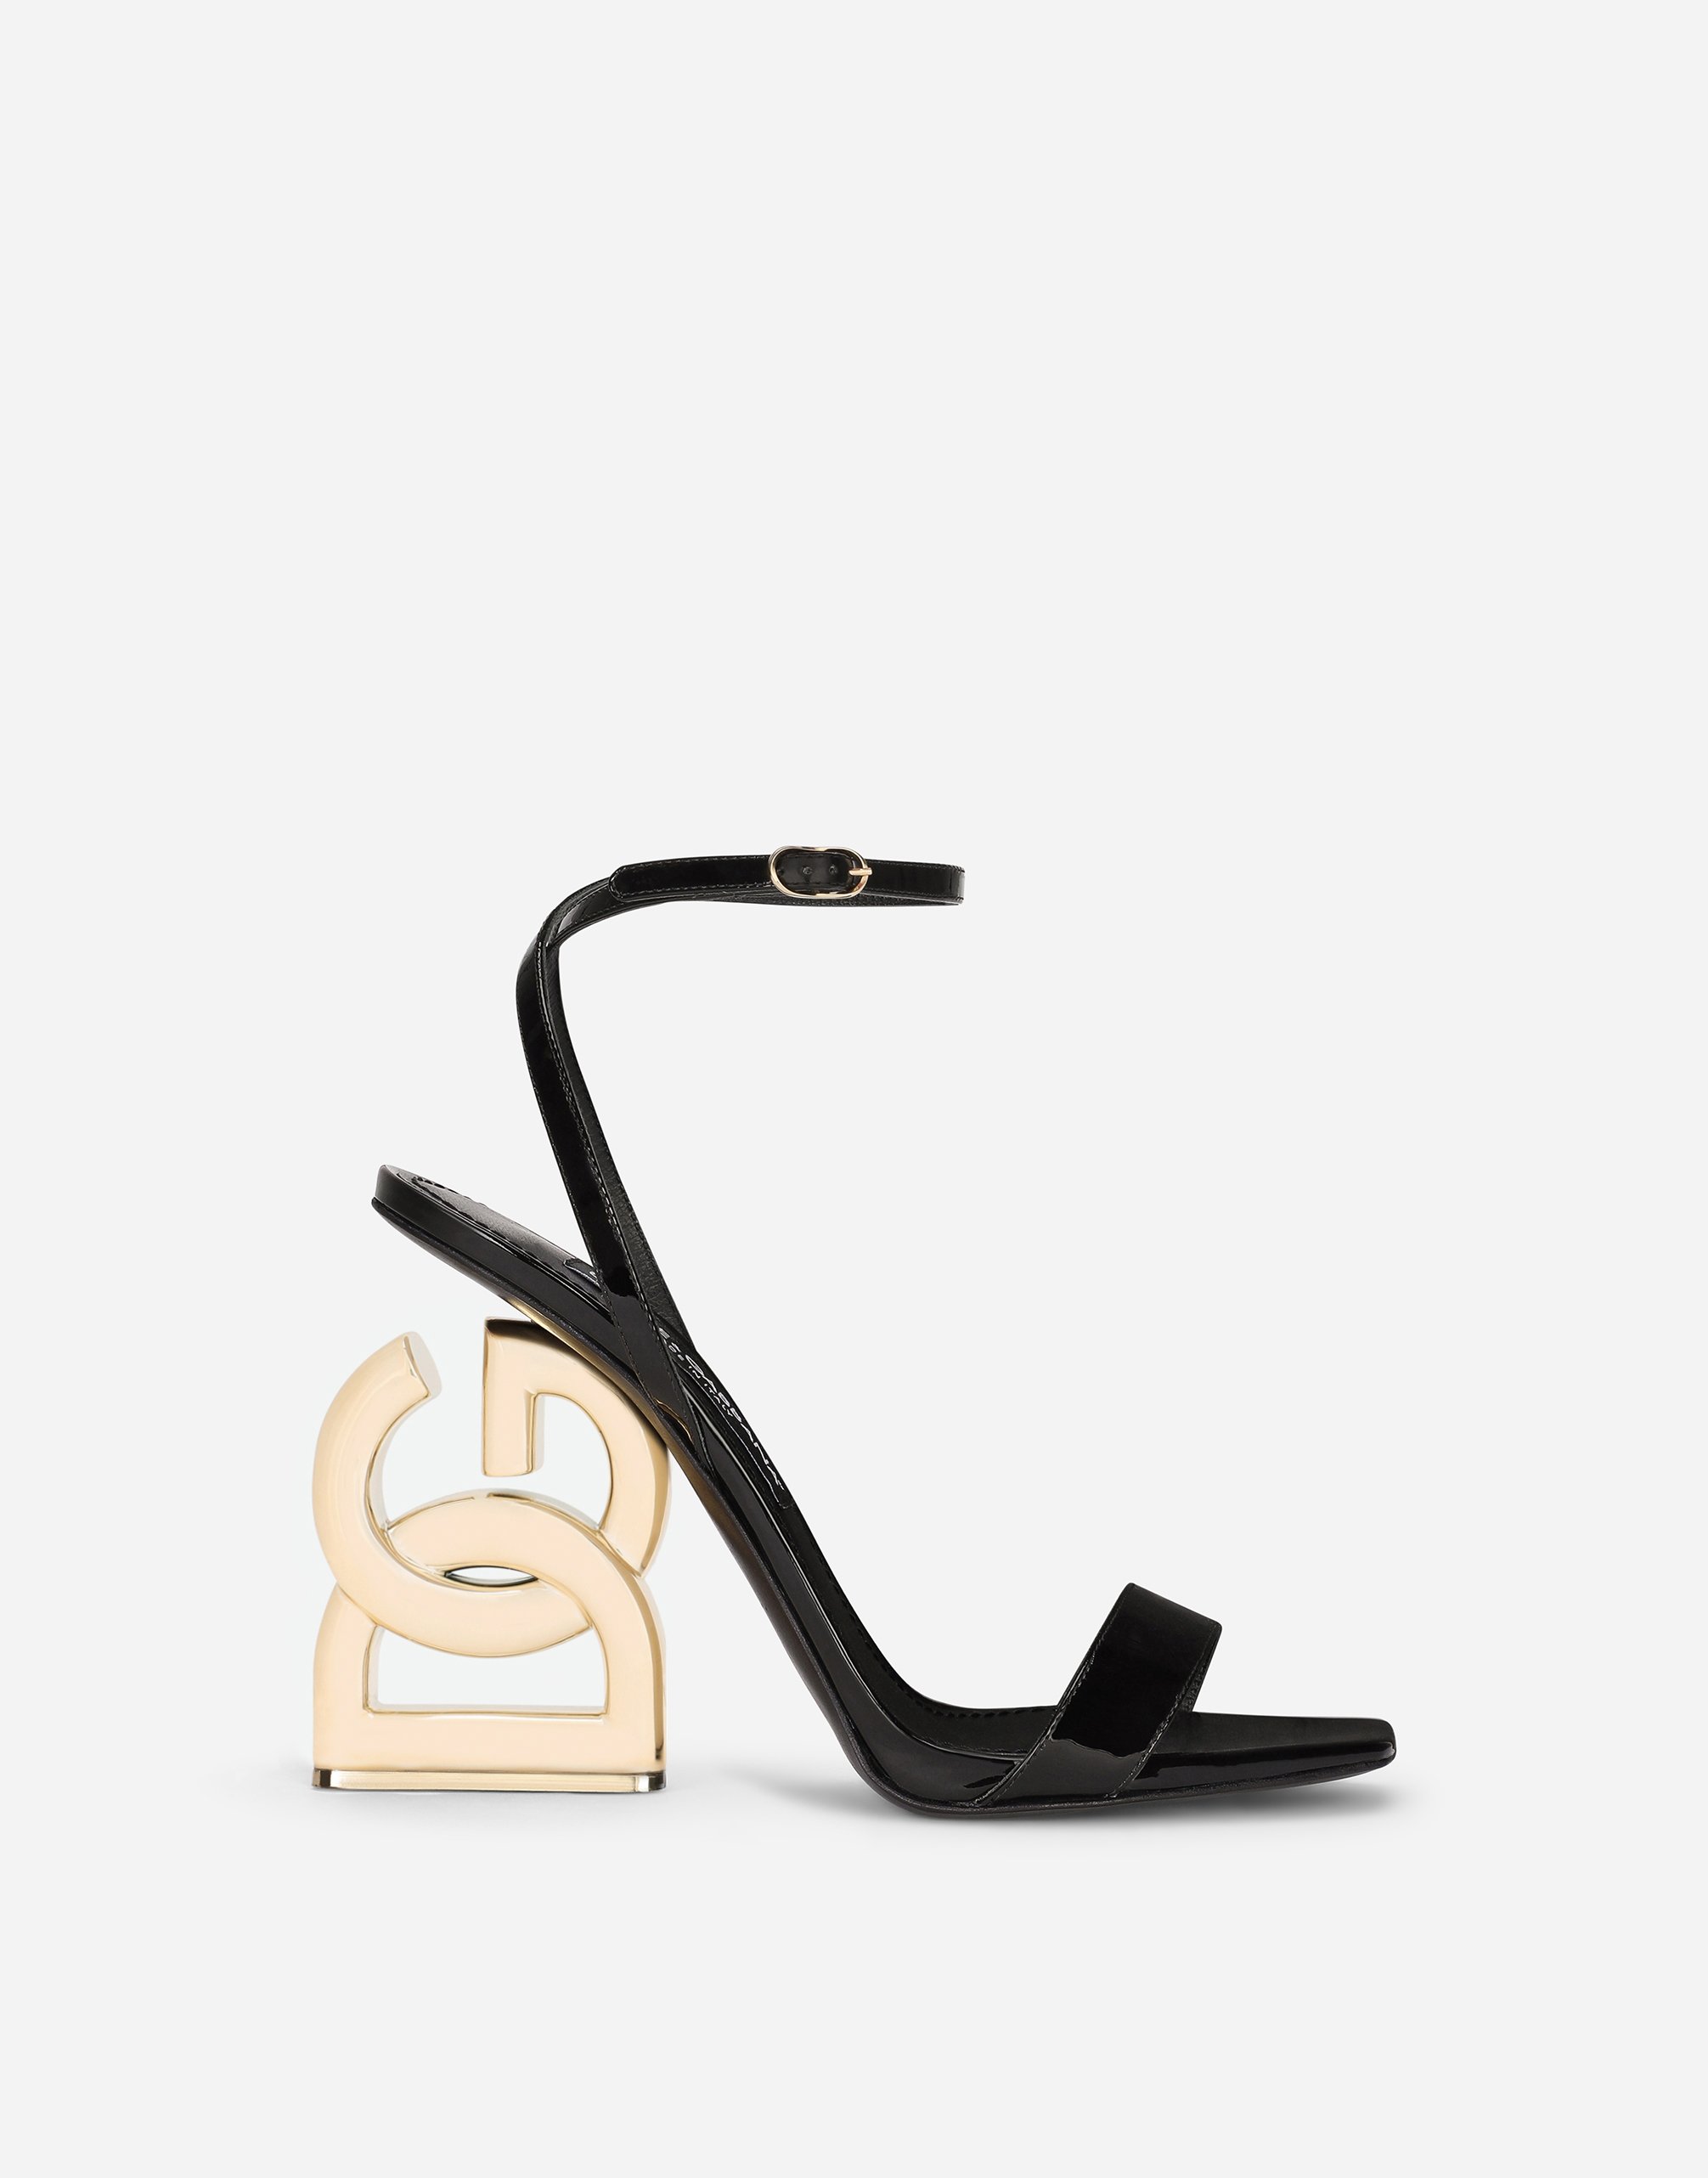 Dolce & Gabbana Embellished Platform Sandals